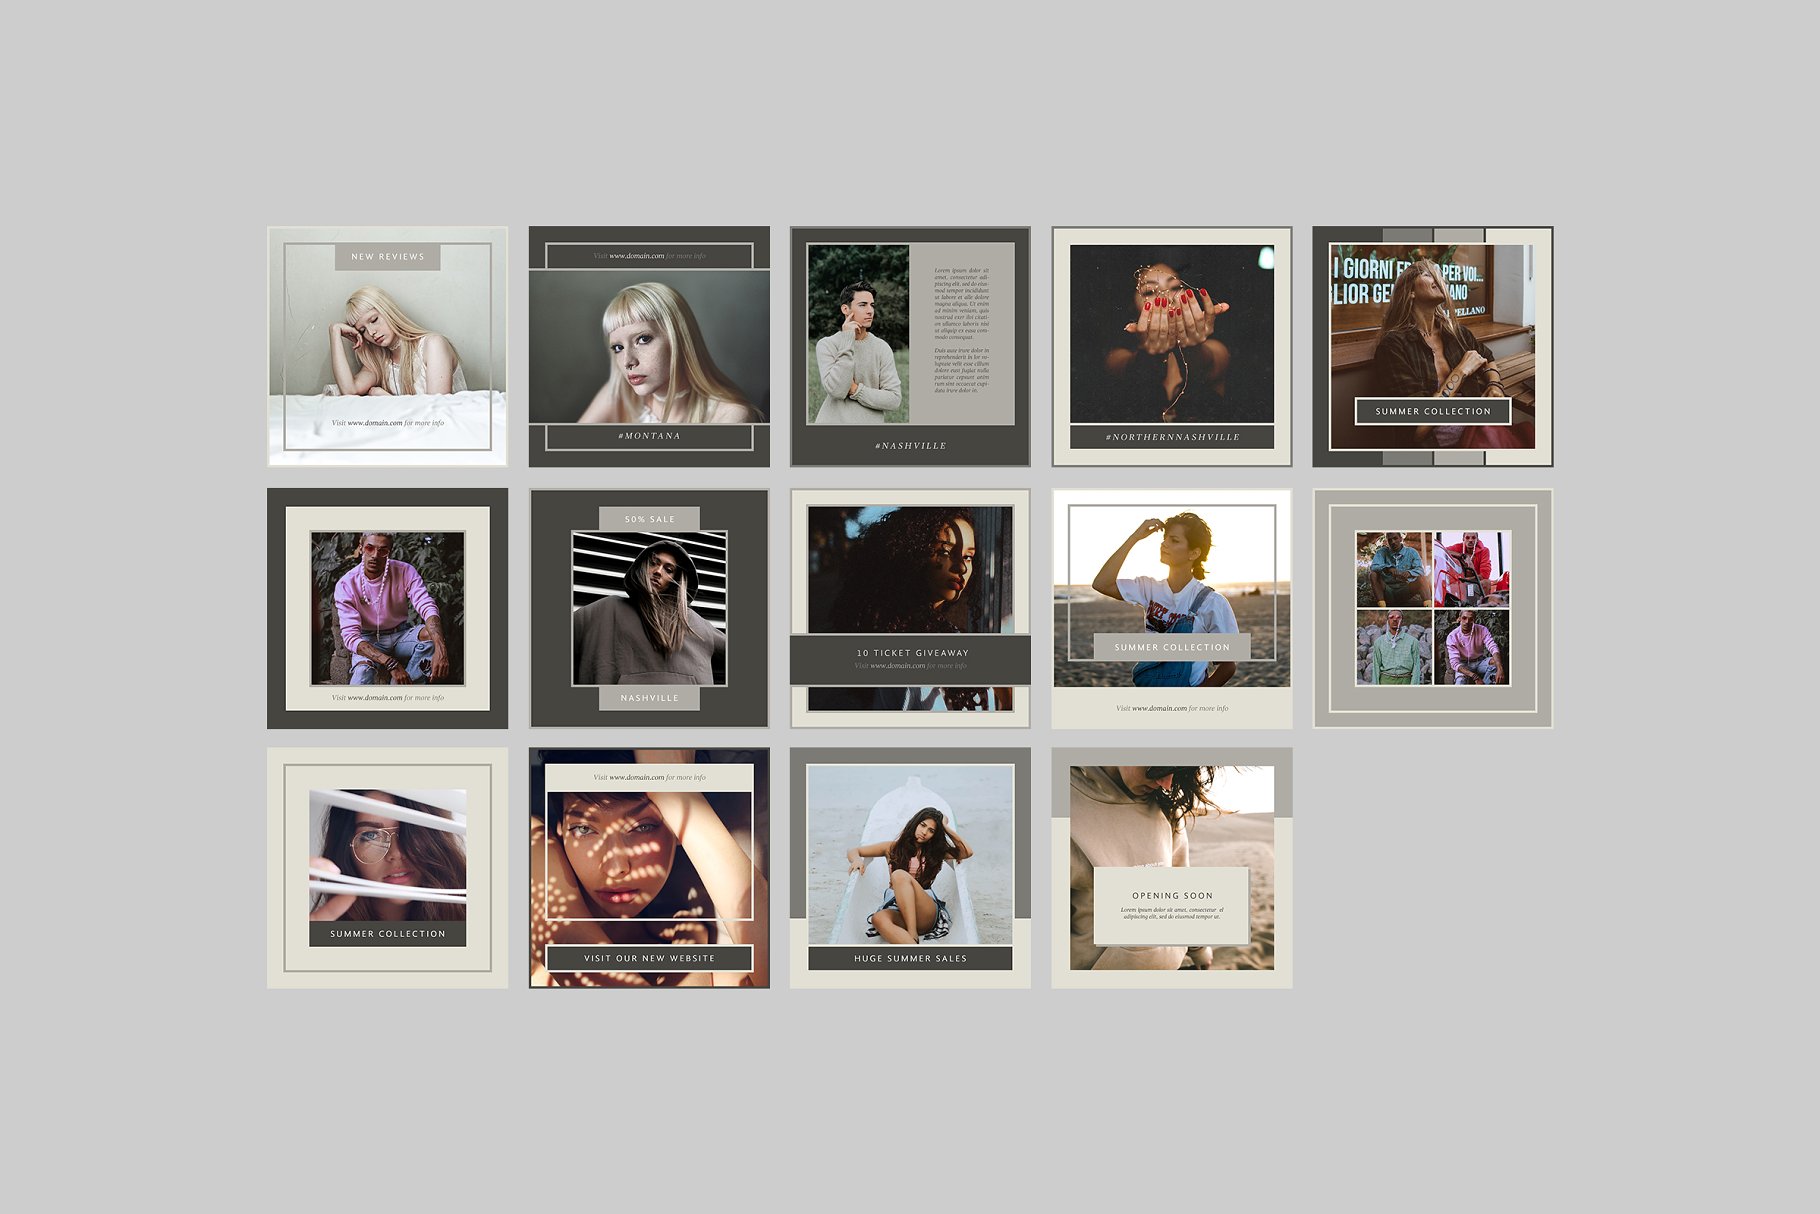 时尚模特摄影主题社交媒体贴图模板非凡图库精选 Nashville Social Media Templates插图(6)